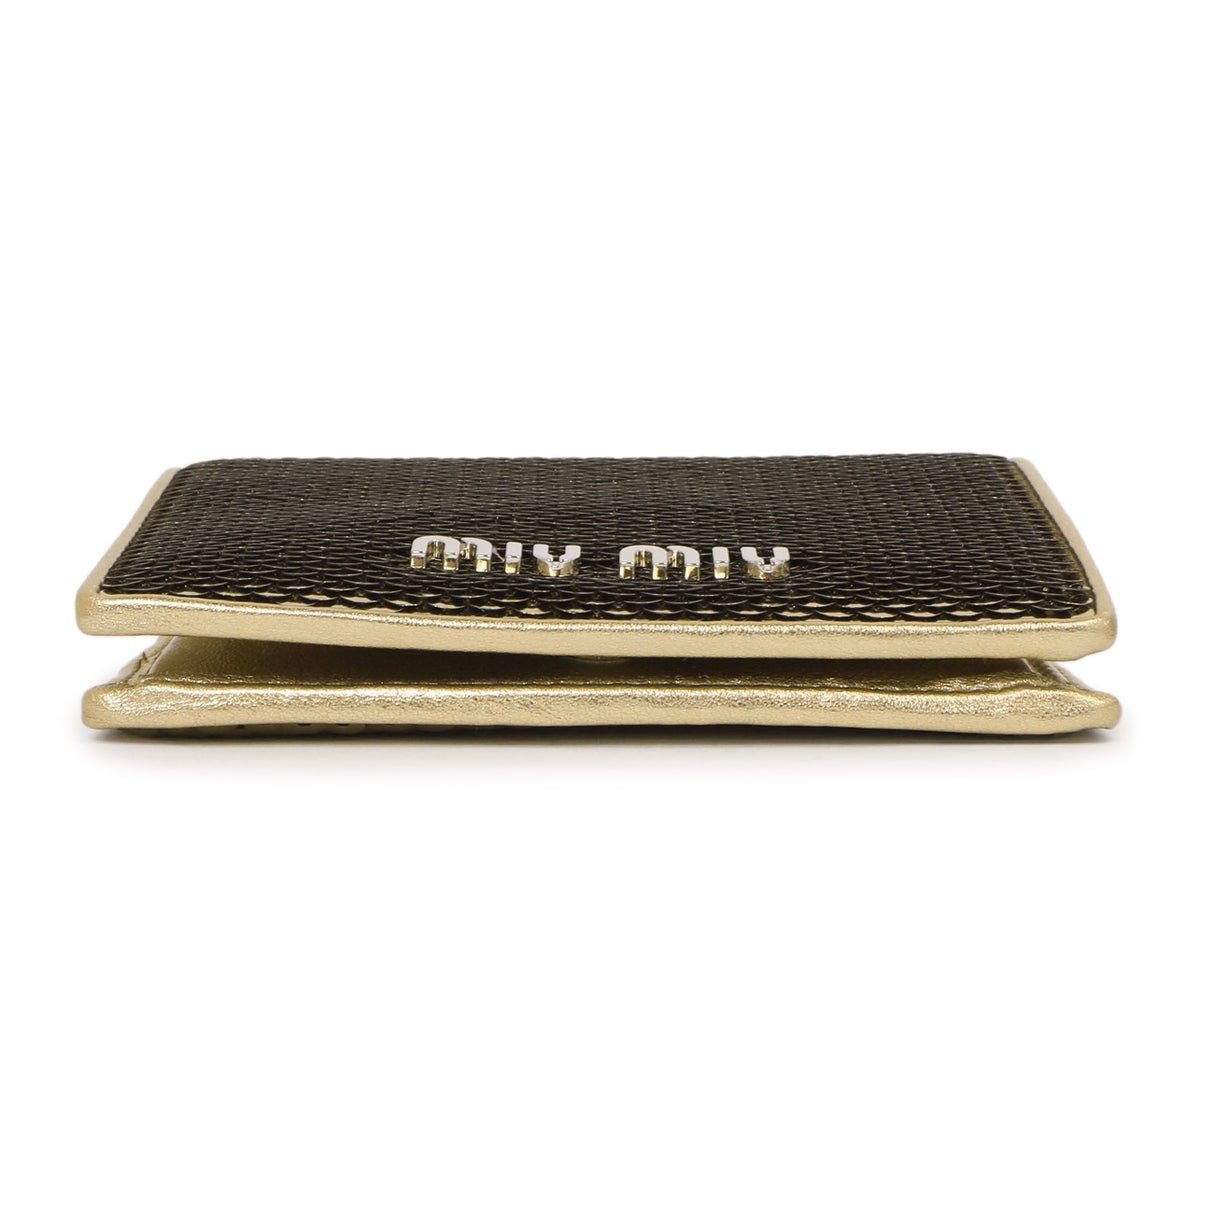 Miu Miu Gold Sequin Wallet